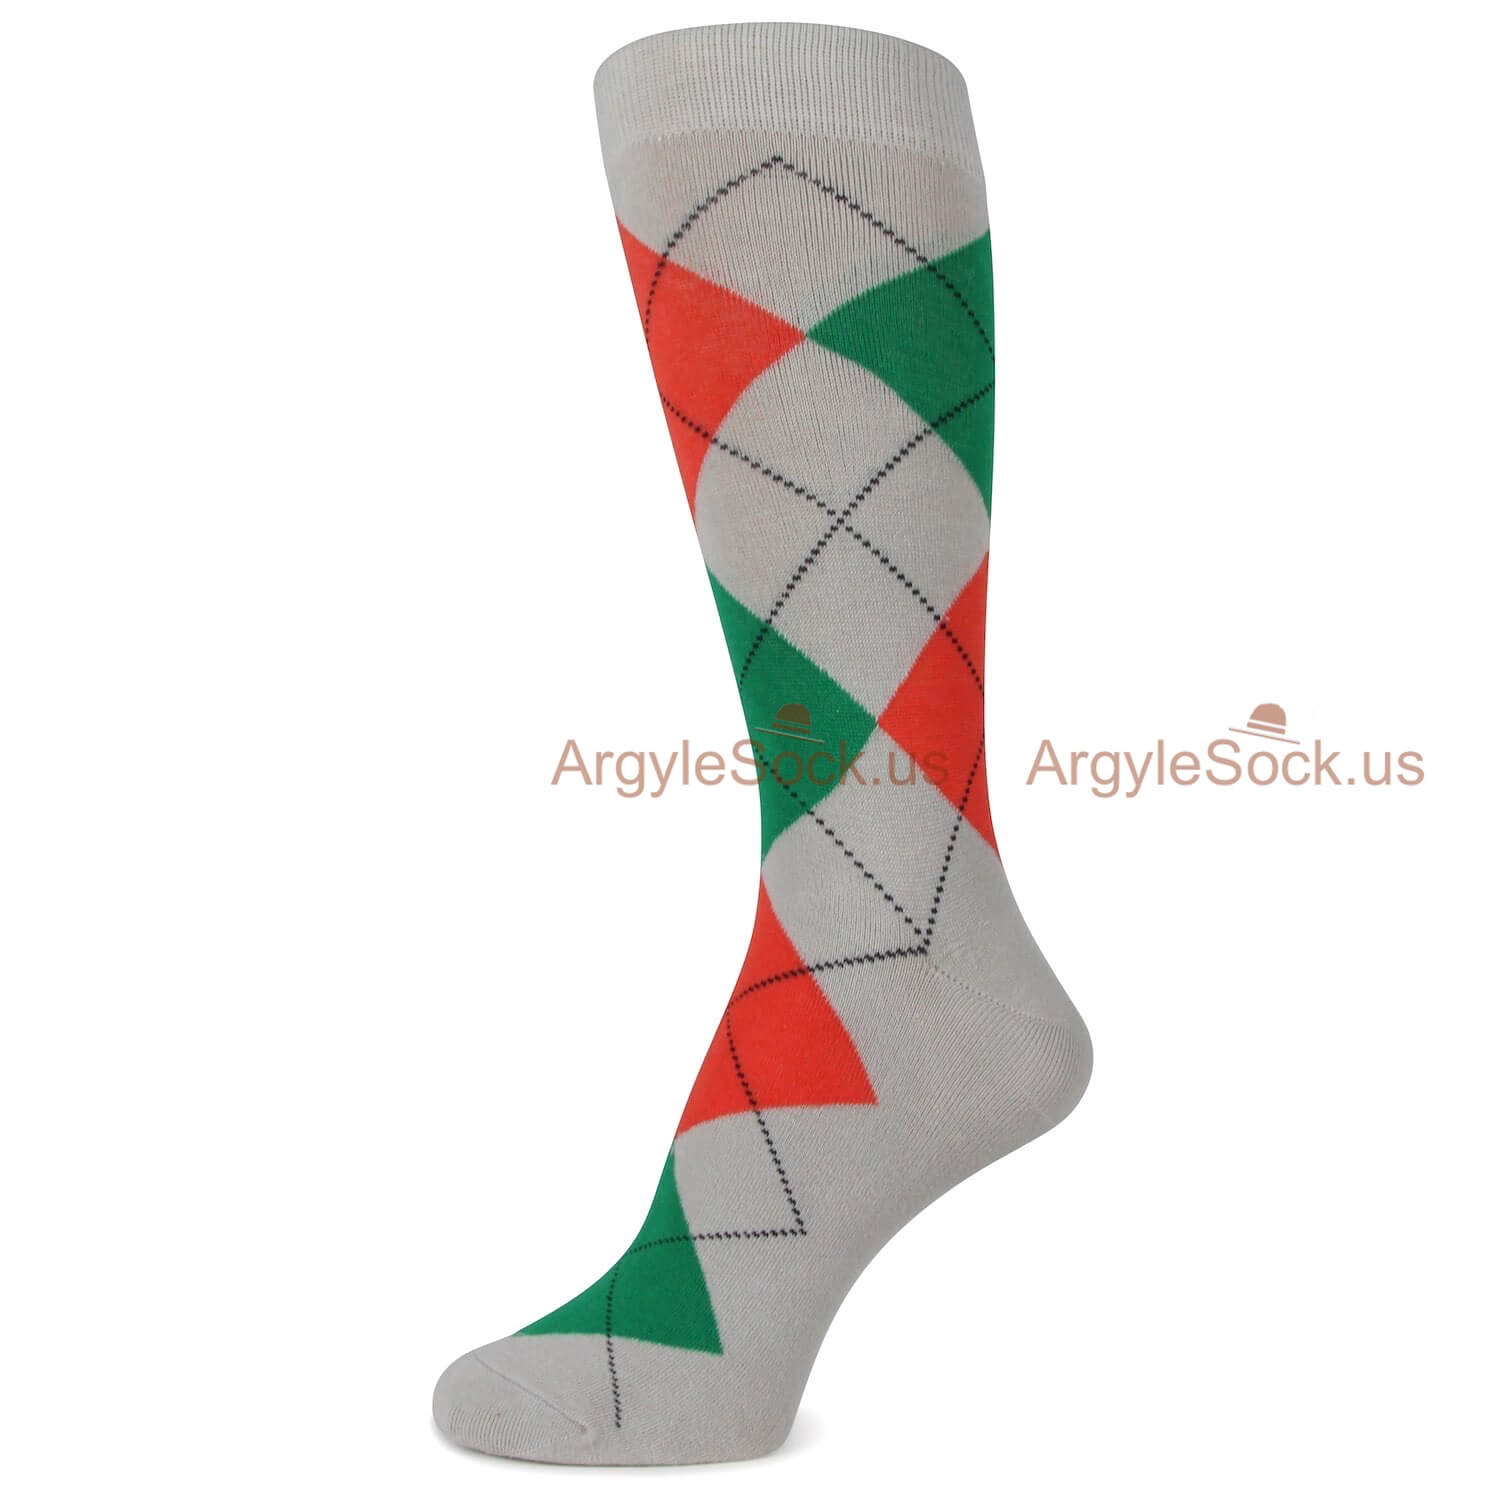 Gray Green and Orange Argyle Socks For Men